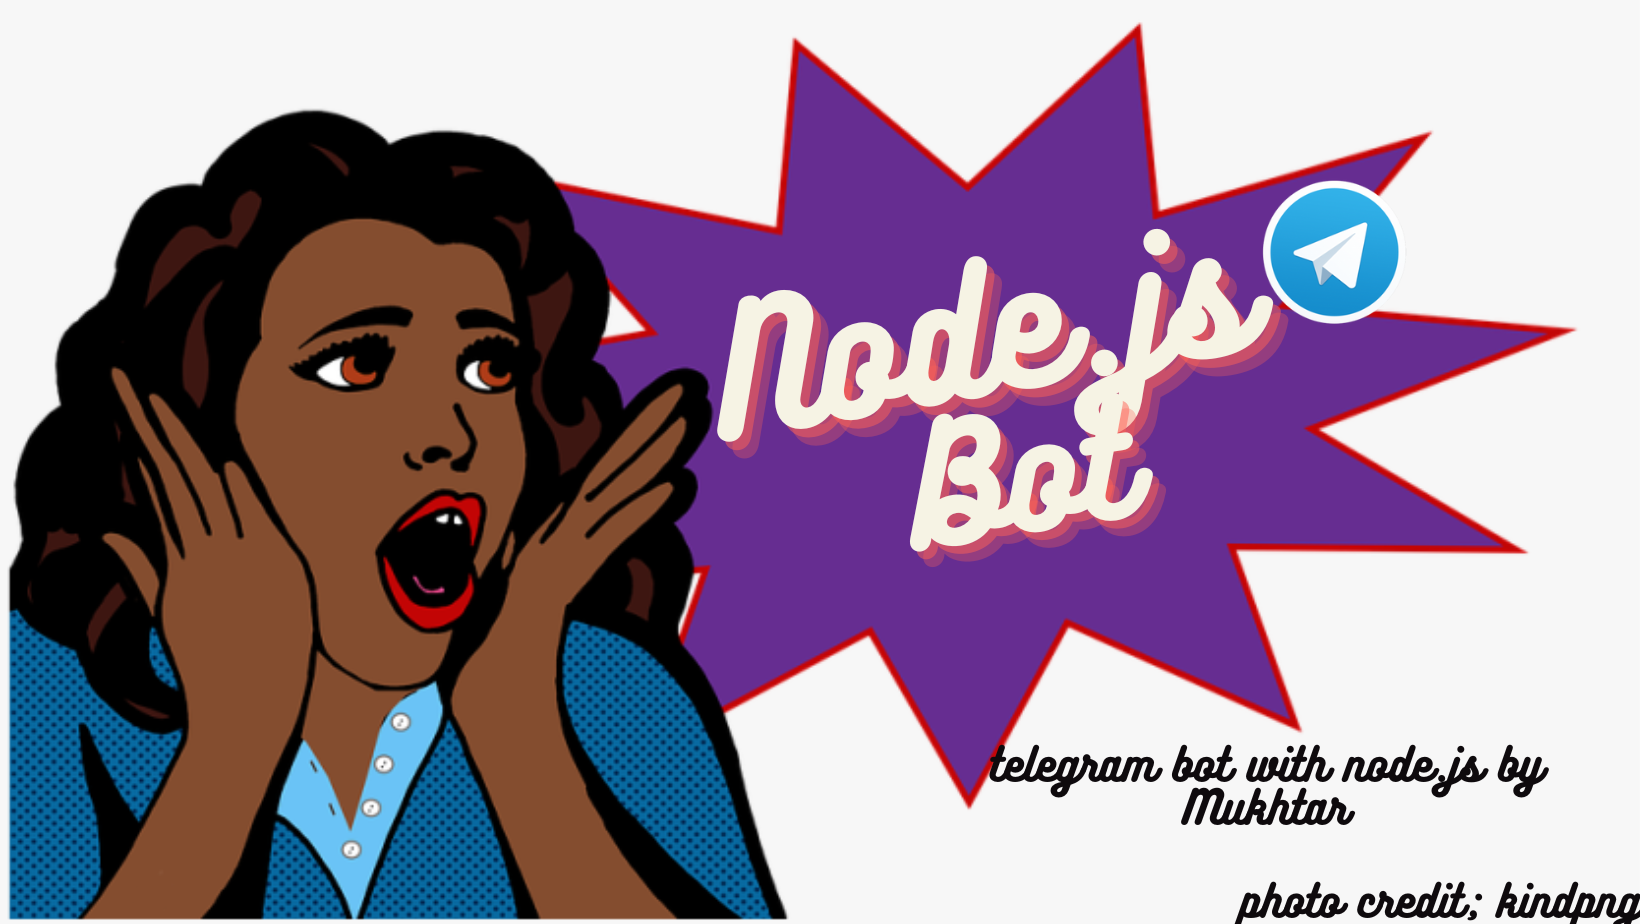 I created a telegram bot using Node.js